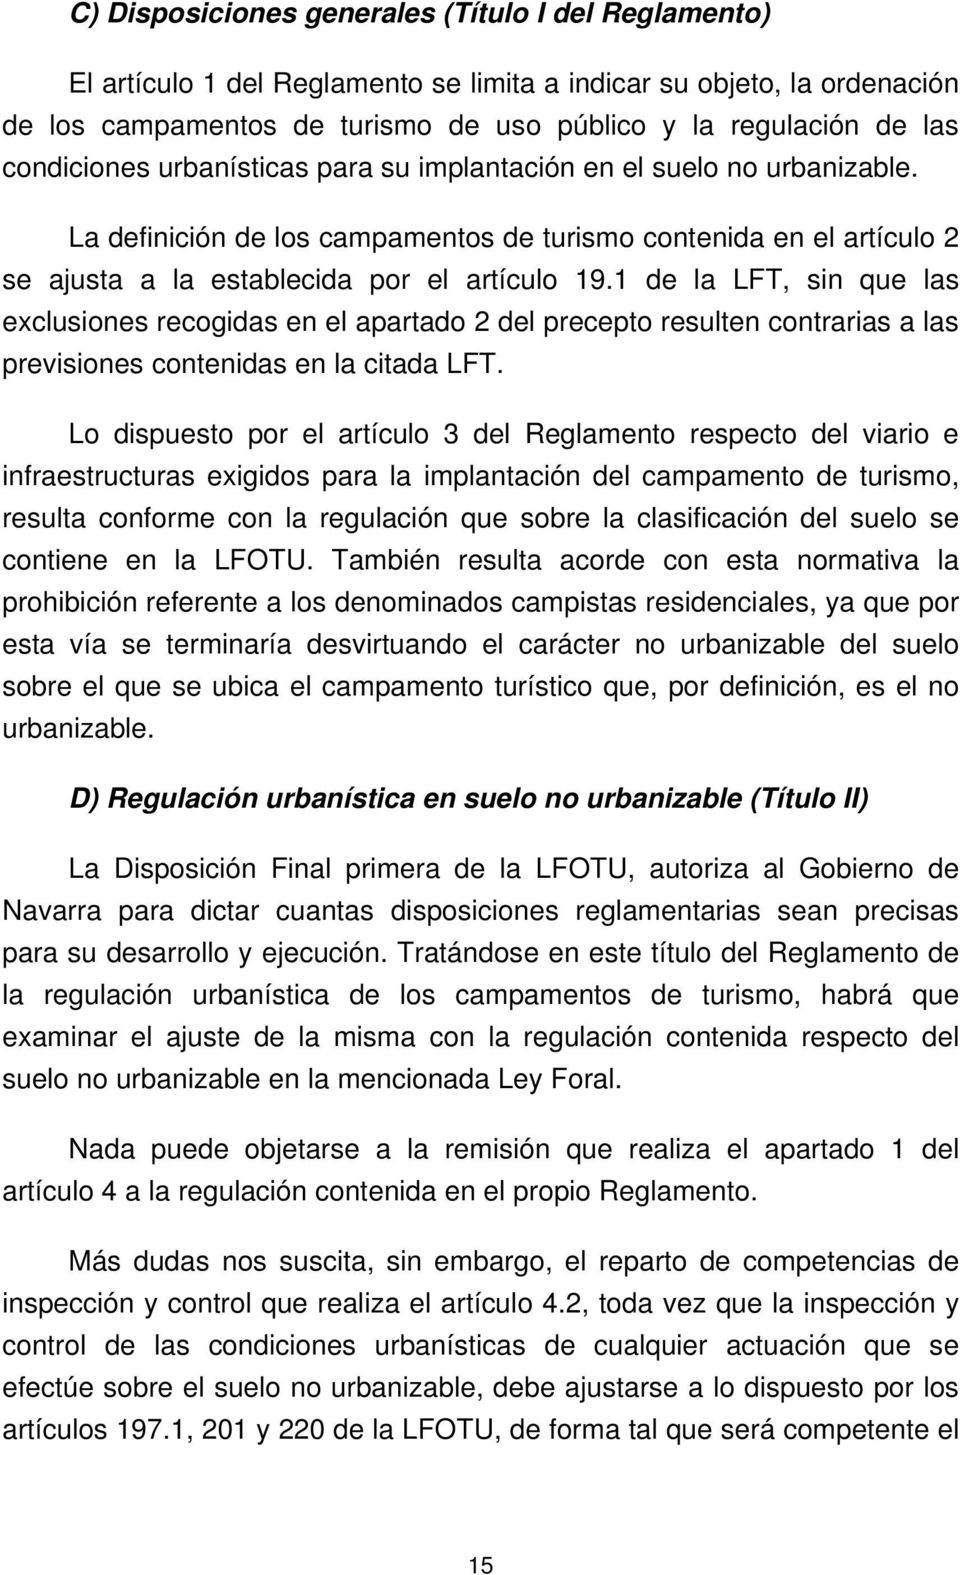 1 de la LFT, sin que las exclusiones recogidas en el apartado 2 del precepto resulten contrarias a las previsiones contenidas en la citada LFT.